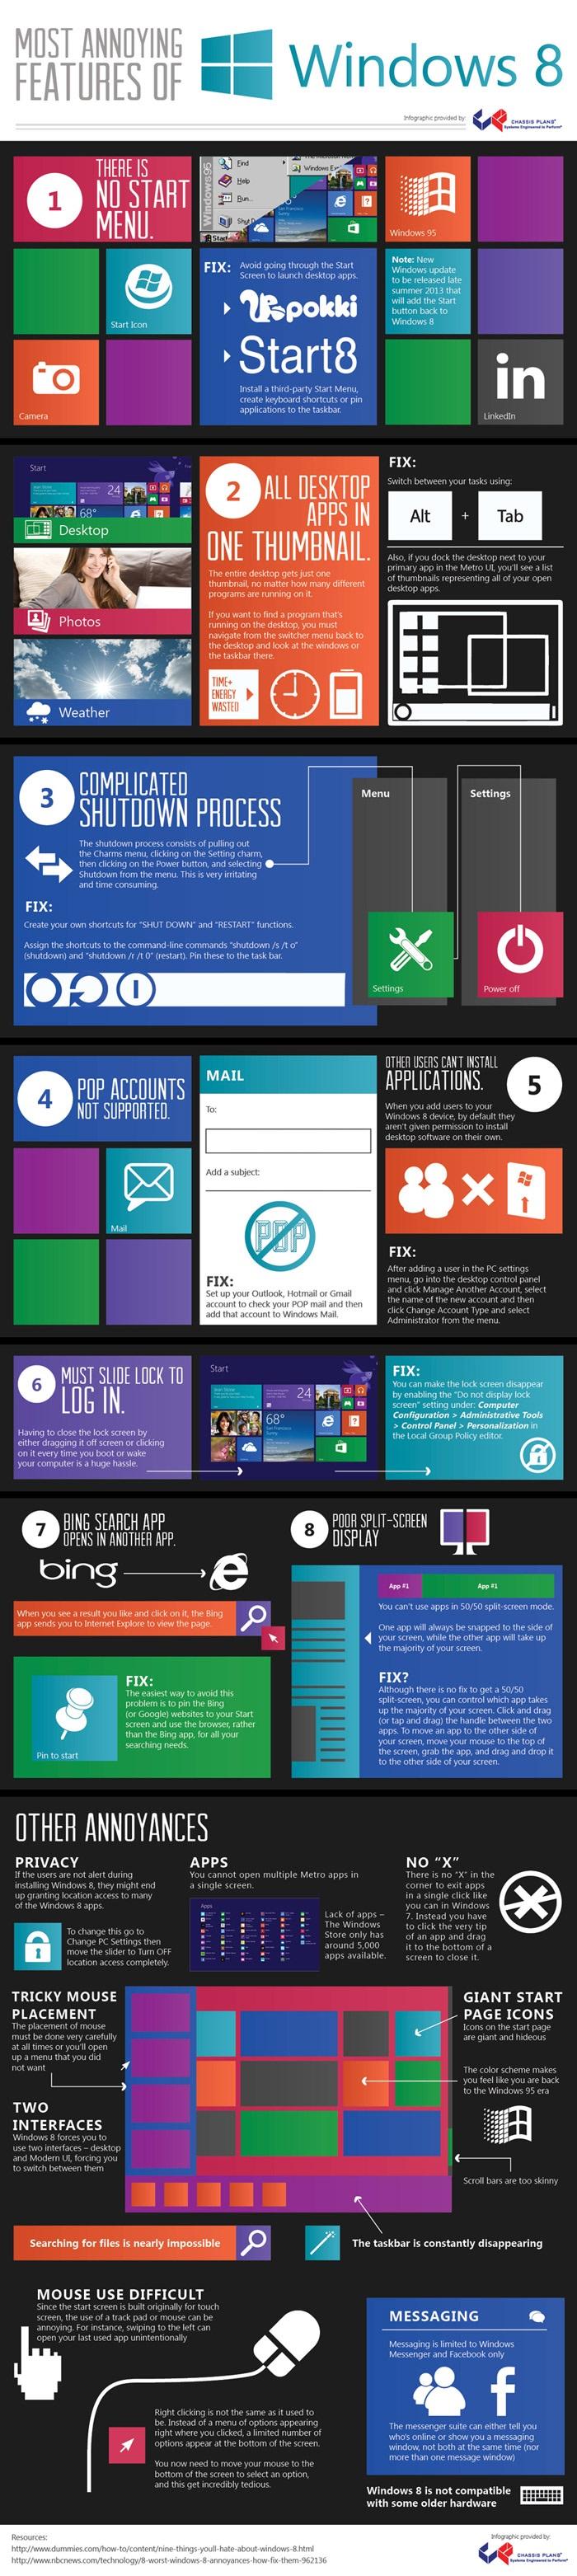 Las características más molestas de Windows 8 #Infografía #Windows #Microsoft